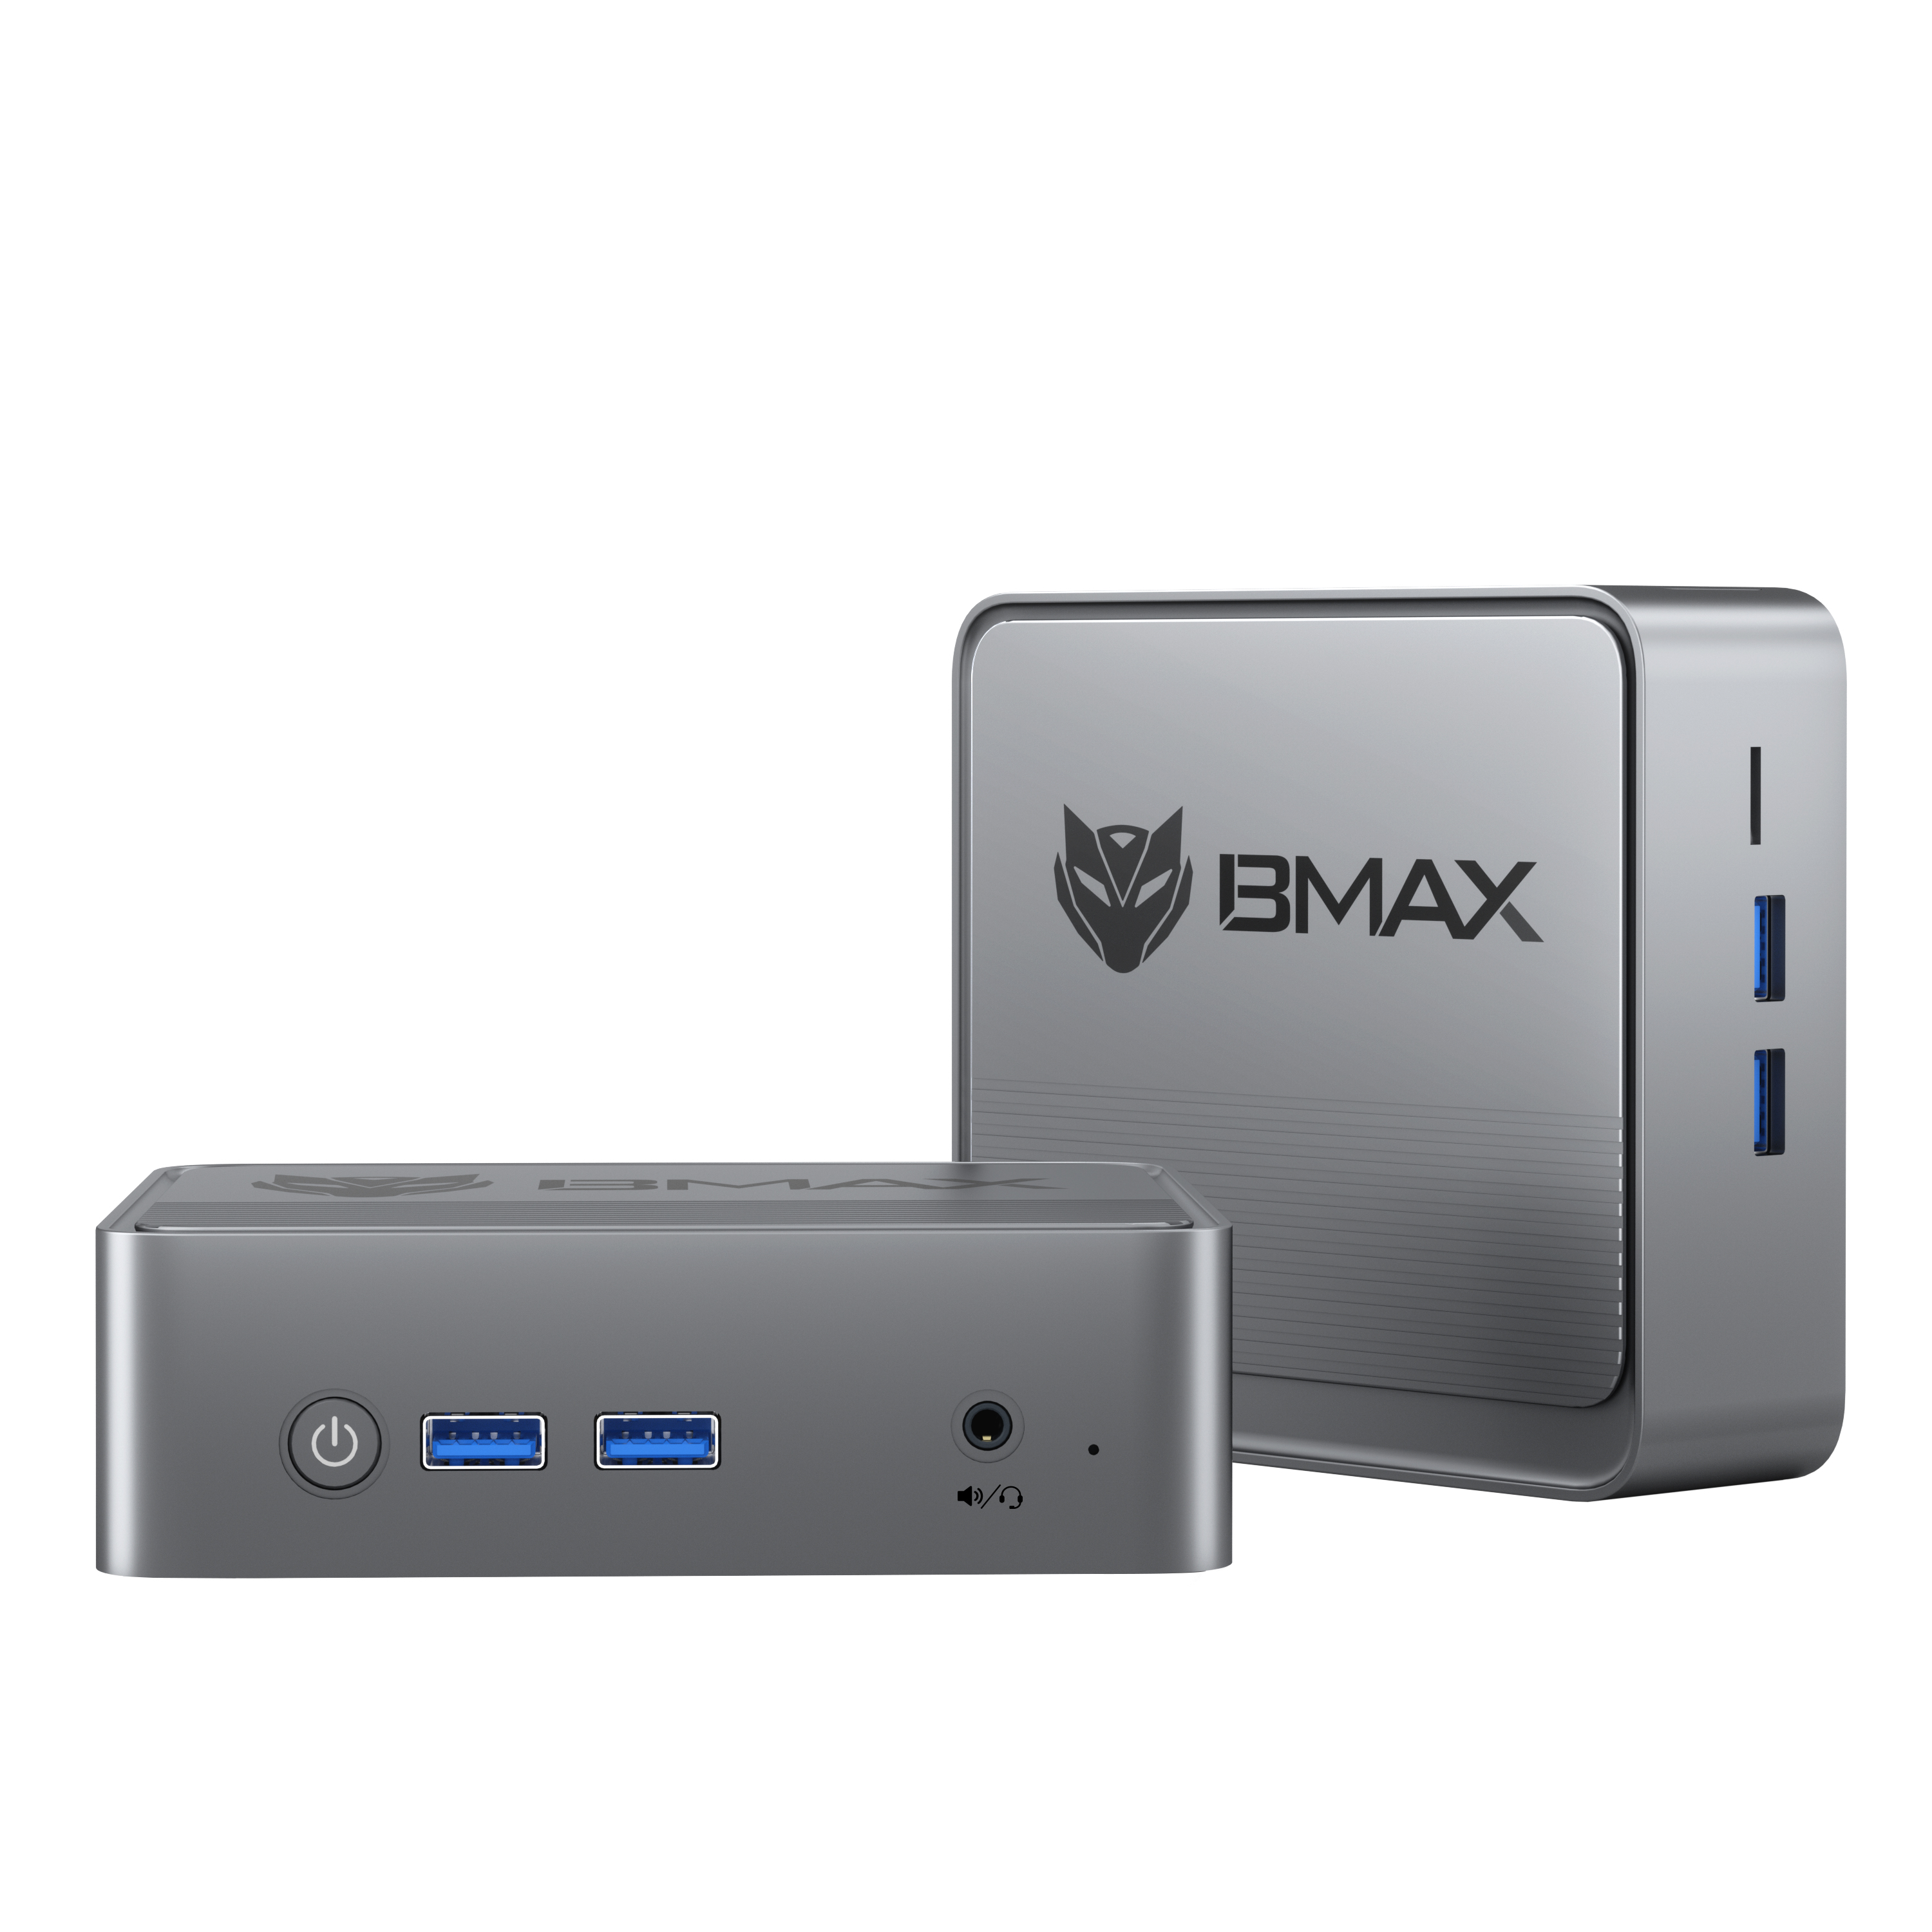 📦 MINI PC BMAX B3 PLUS, INTEL N5095, 8-256GB